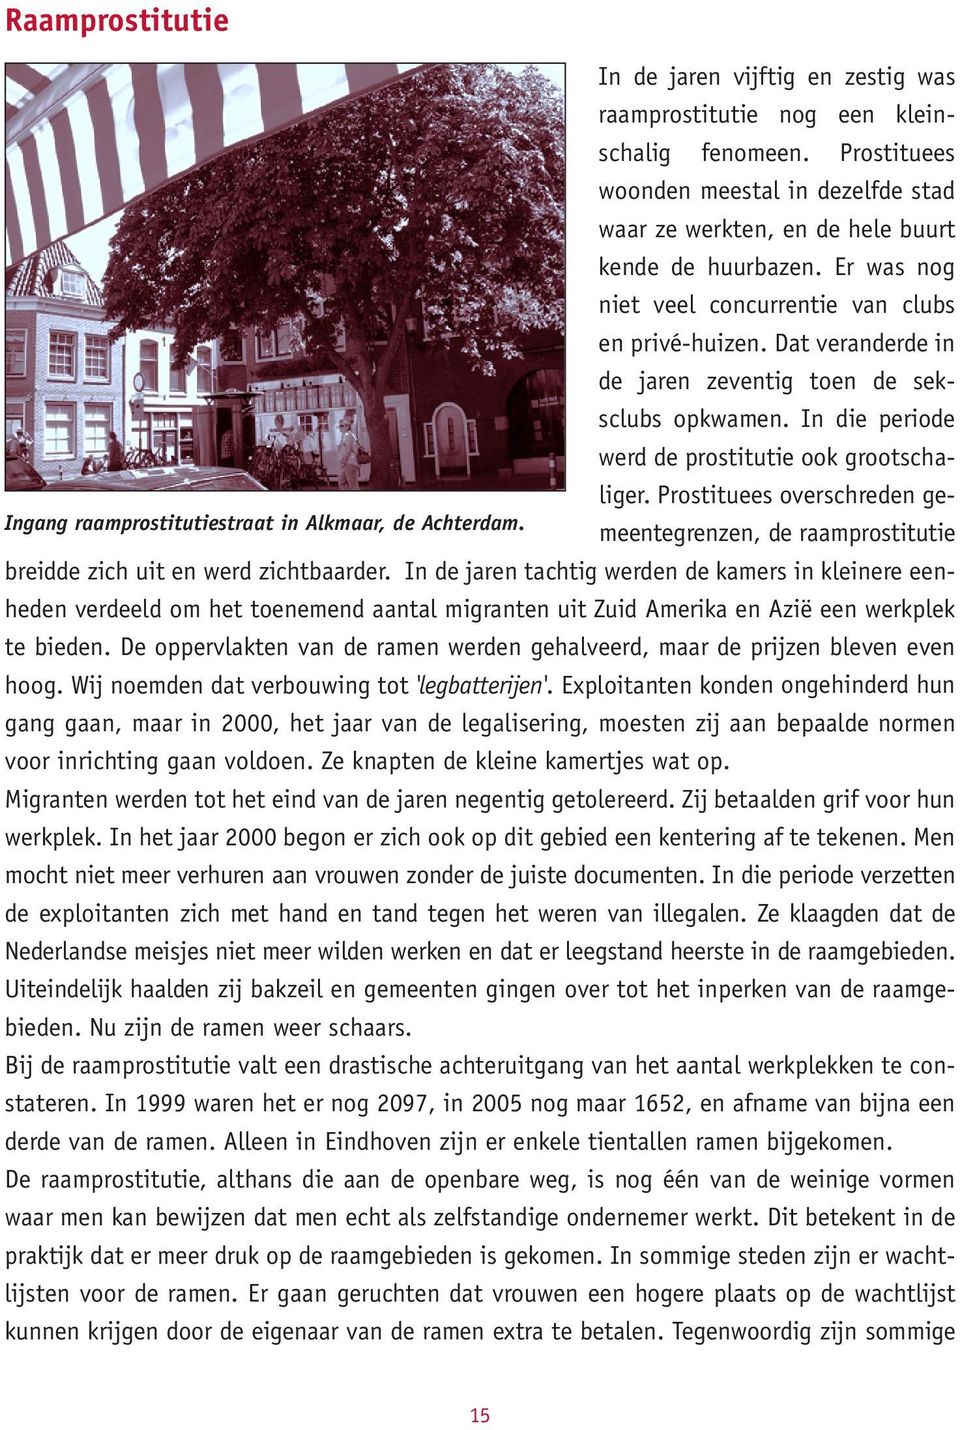 Prostituees overschreden gemeentegrenzen, de raamprostitutie Ingang raamprostitutiestraat in Alkmaar, de Achterdam. breidde zich uit en werd zichtbaarder.